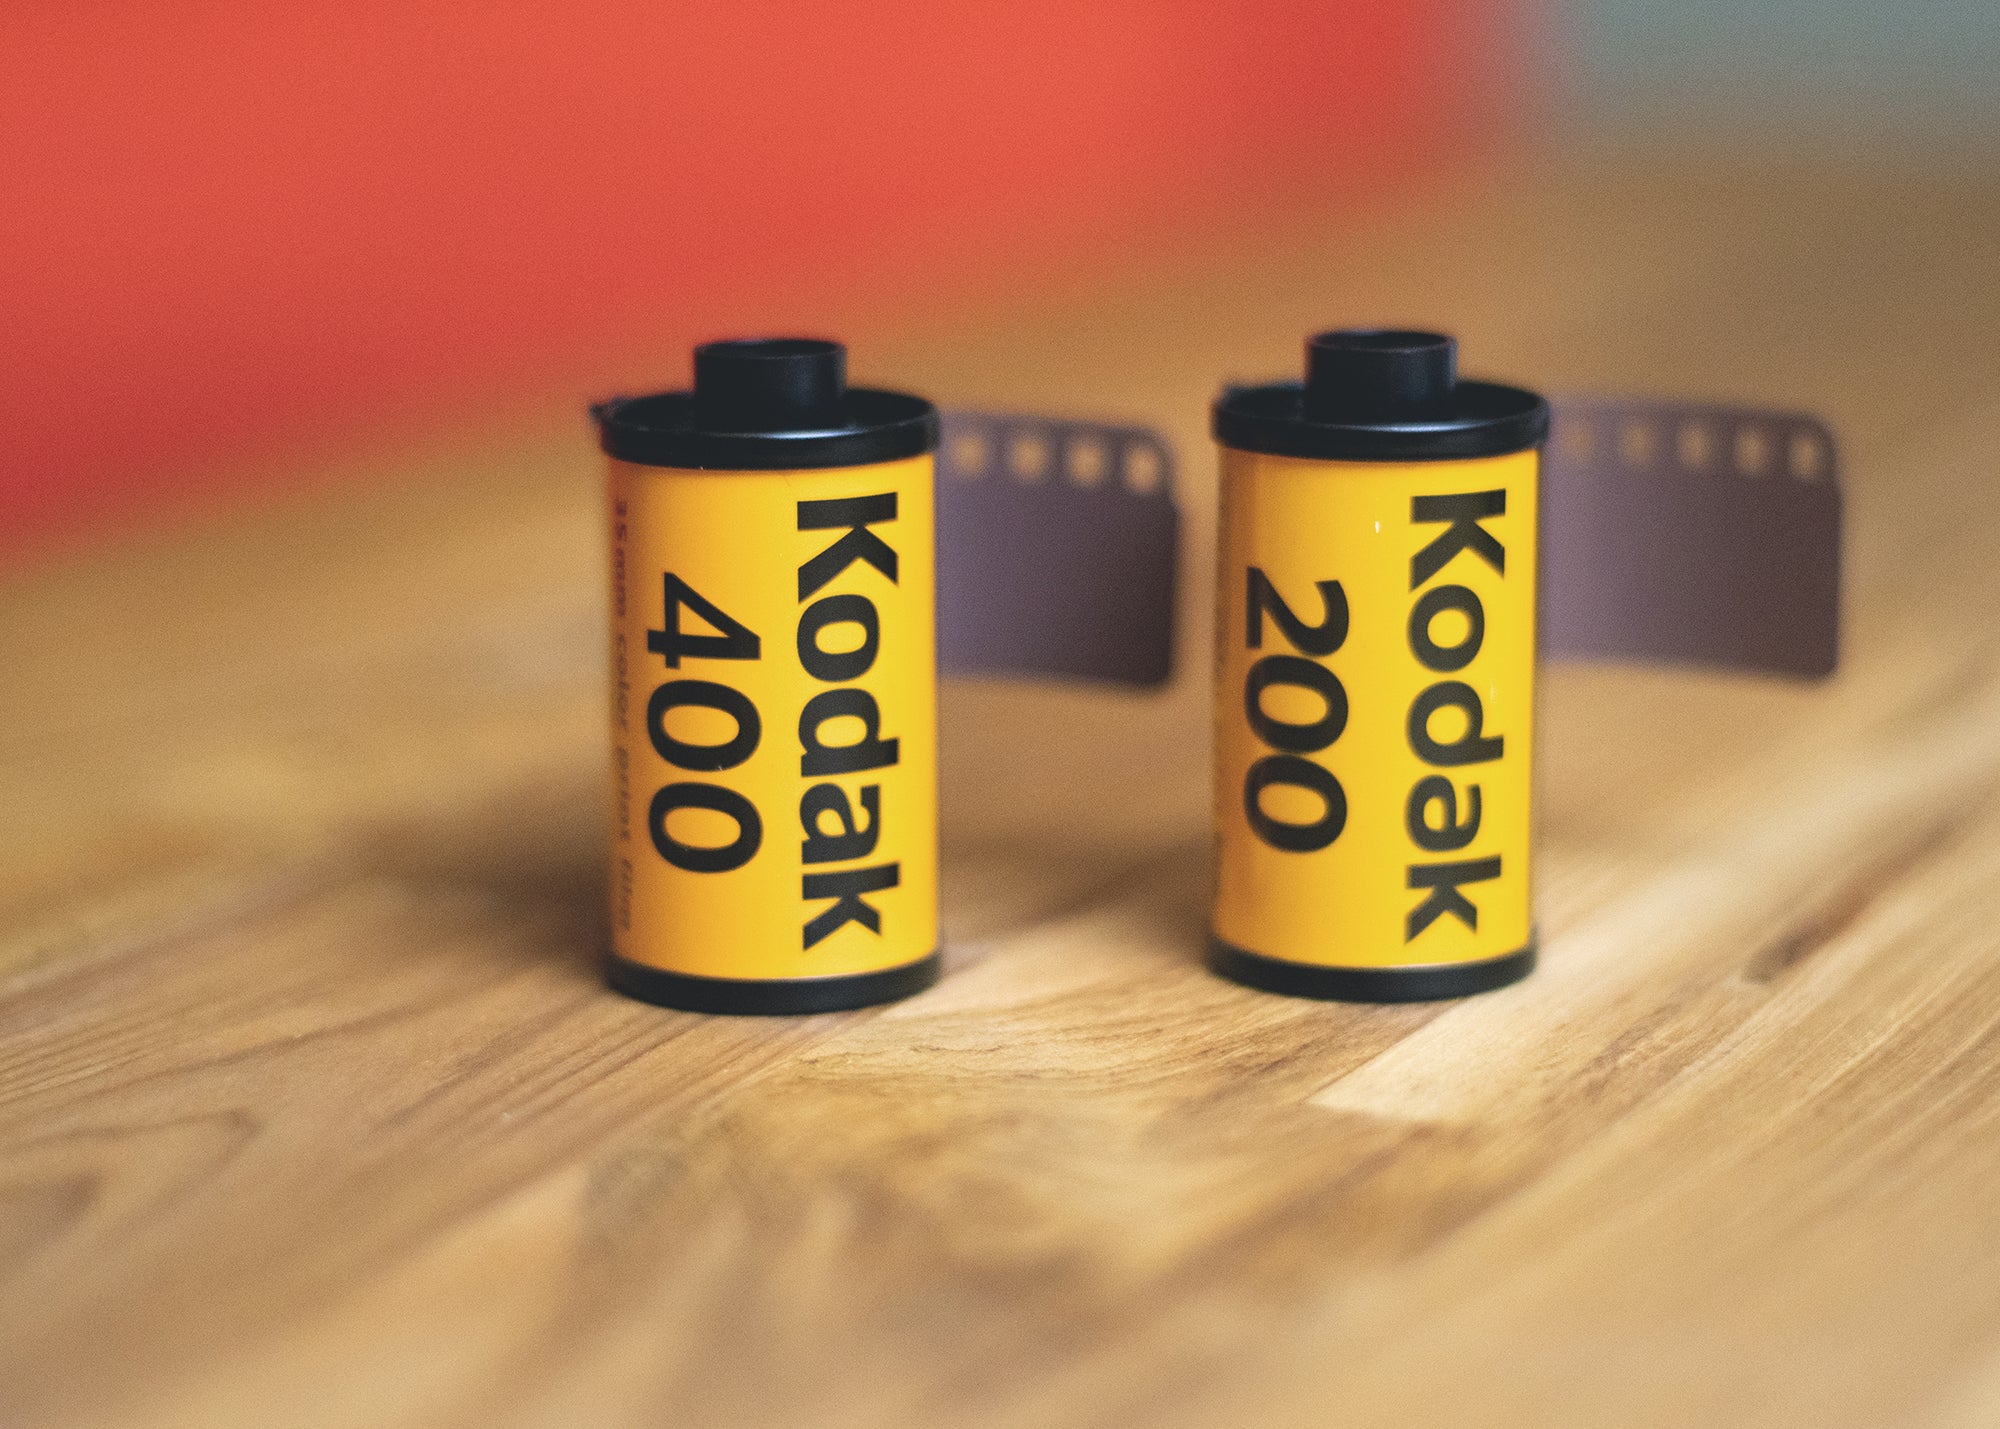 Kodak Color Film Stocks